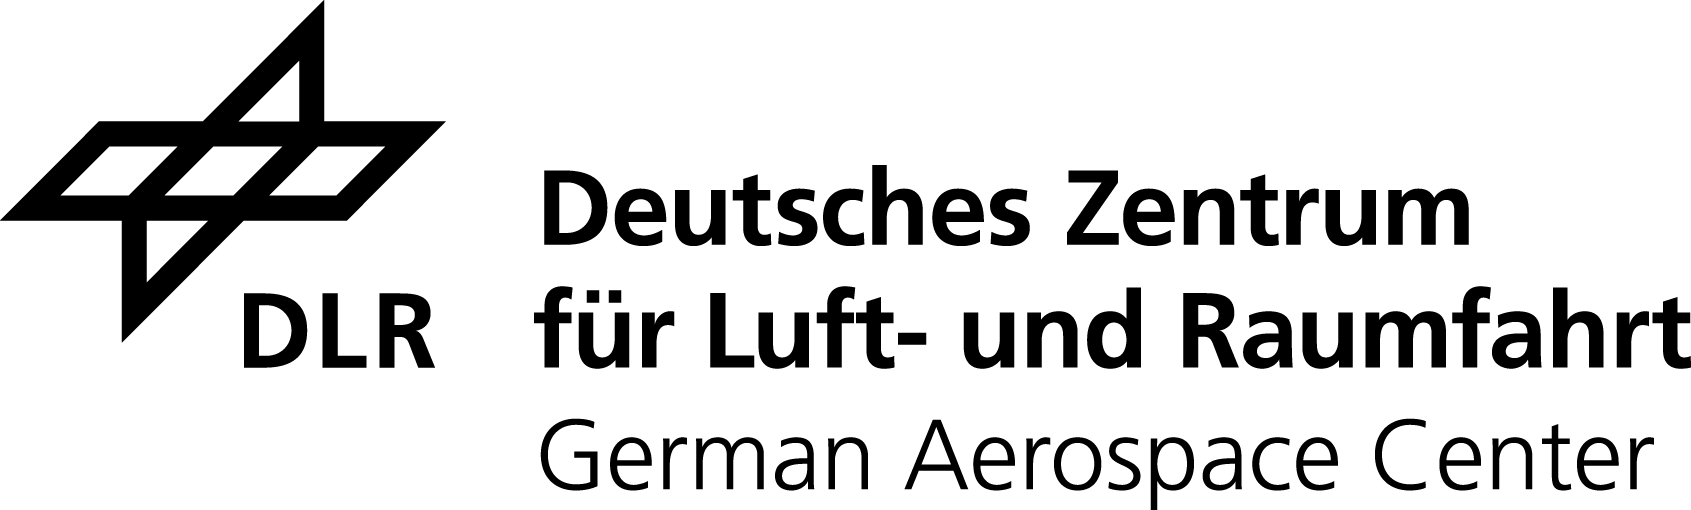 DLR_Logo_engl_schwarz.png